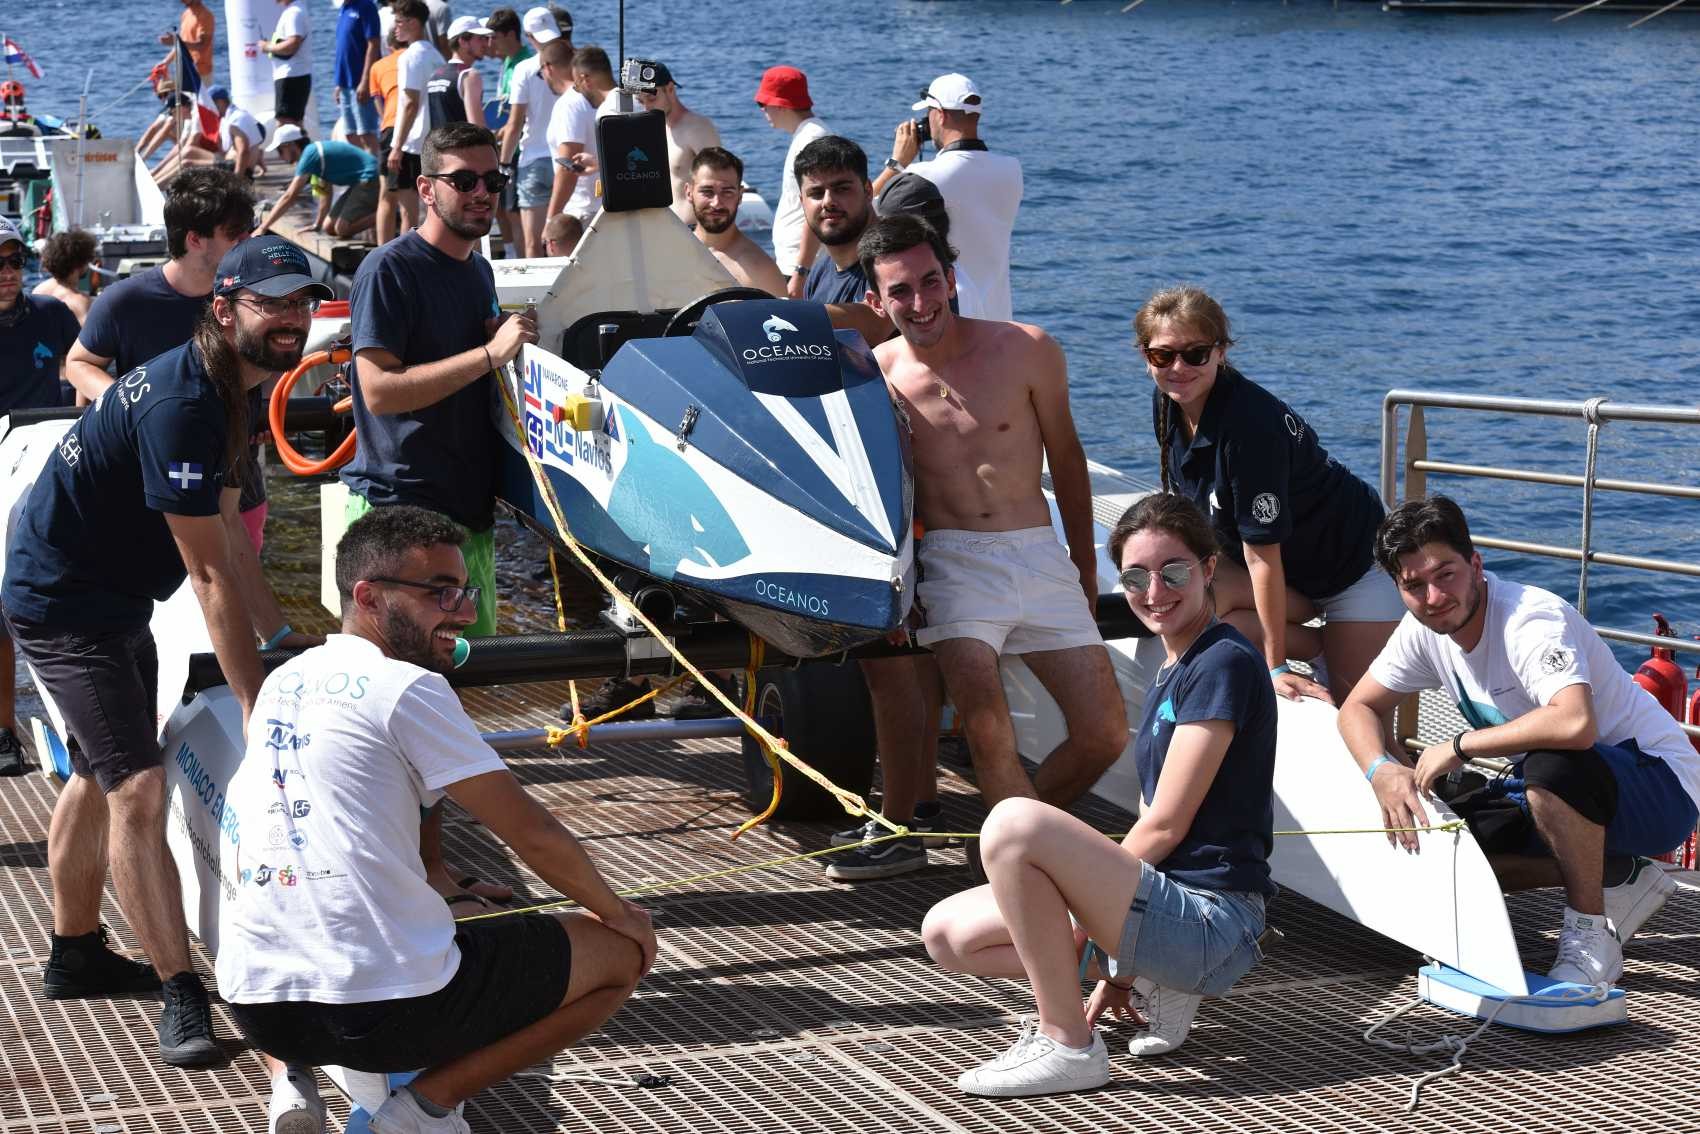 L'équipe grecque Oceanos NTUA pose fièrement devant son bateau